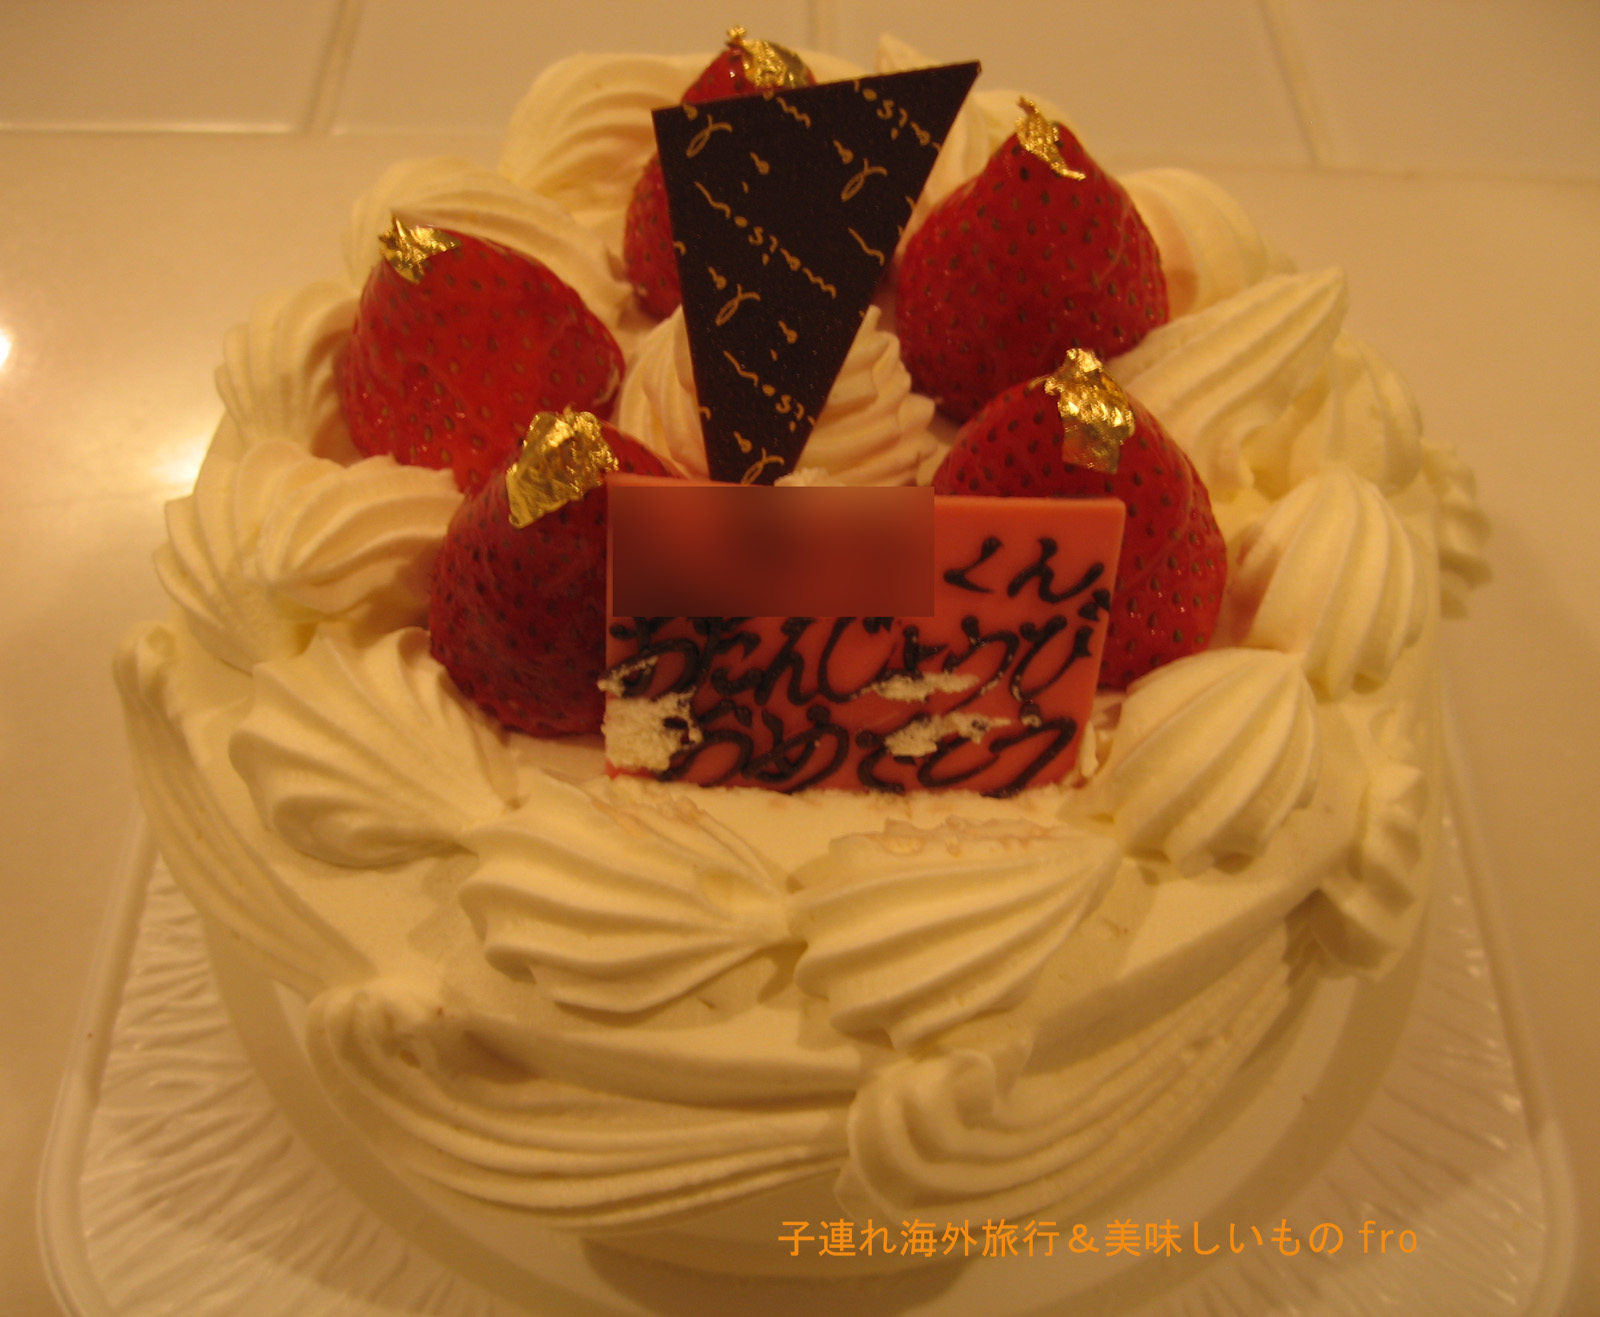 グランドホテル のお誕生日ケーキ 子連れ海外旅行 美味しいものfrom札幌